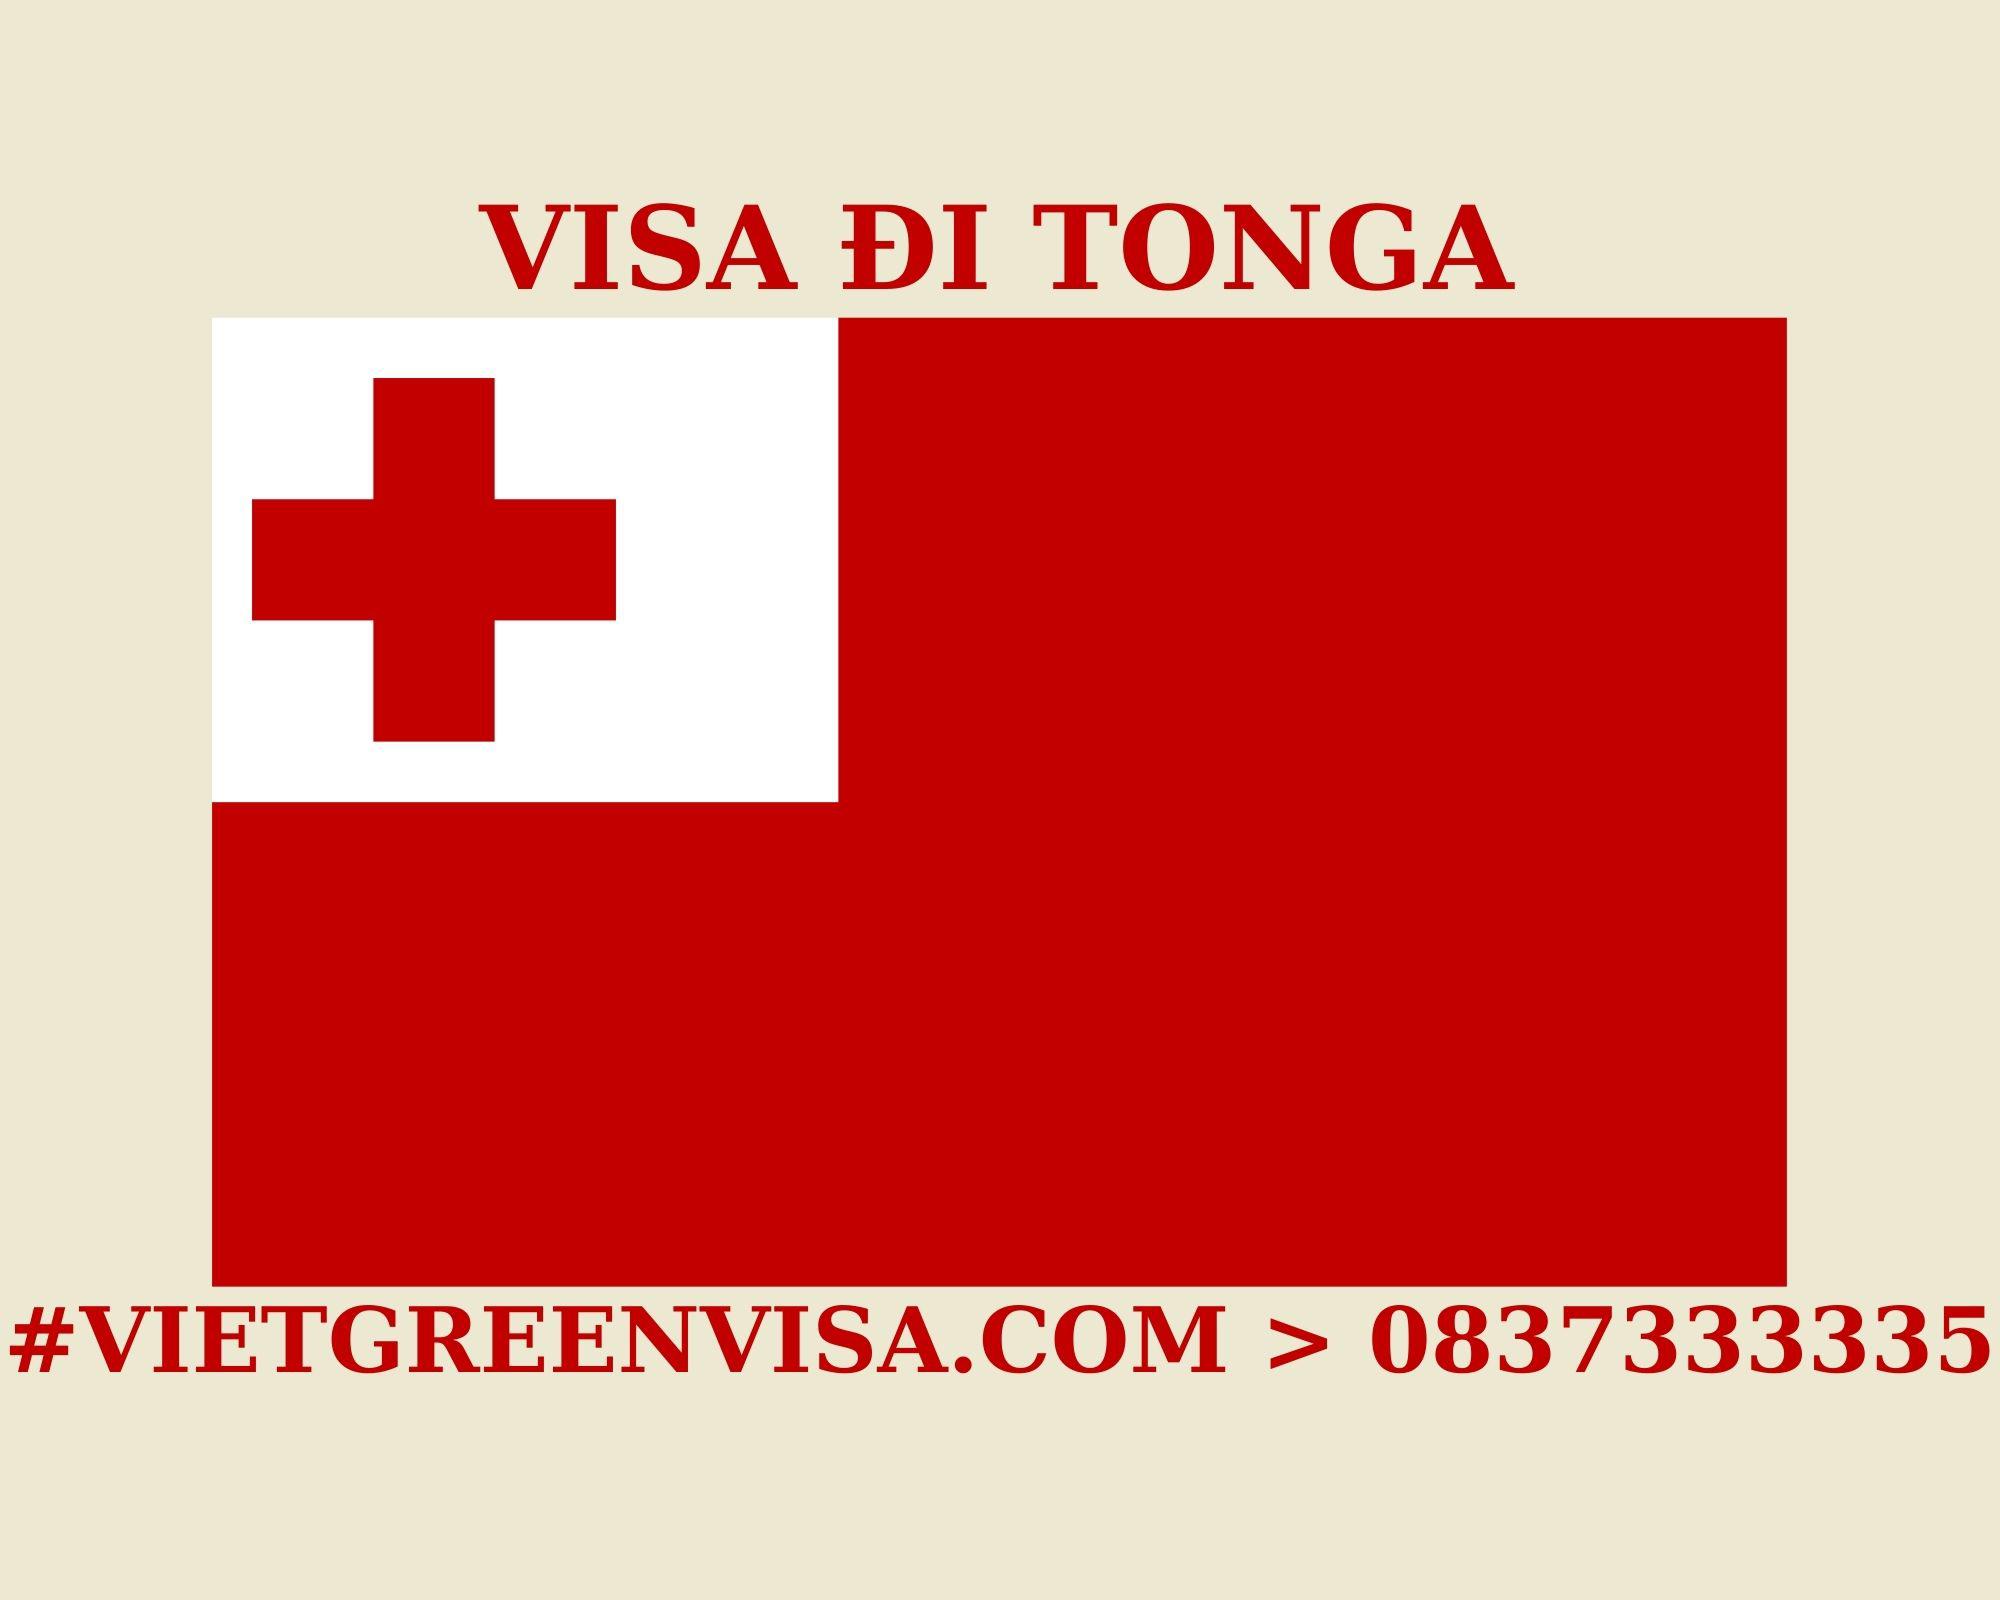 Làm Visa Tonga thăm thân chất lượng, giá rẻ